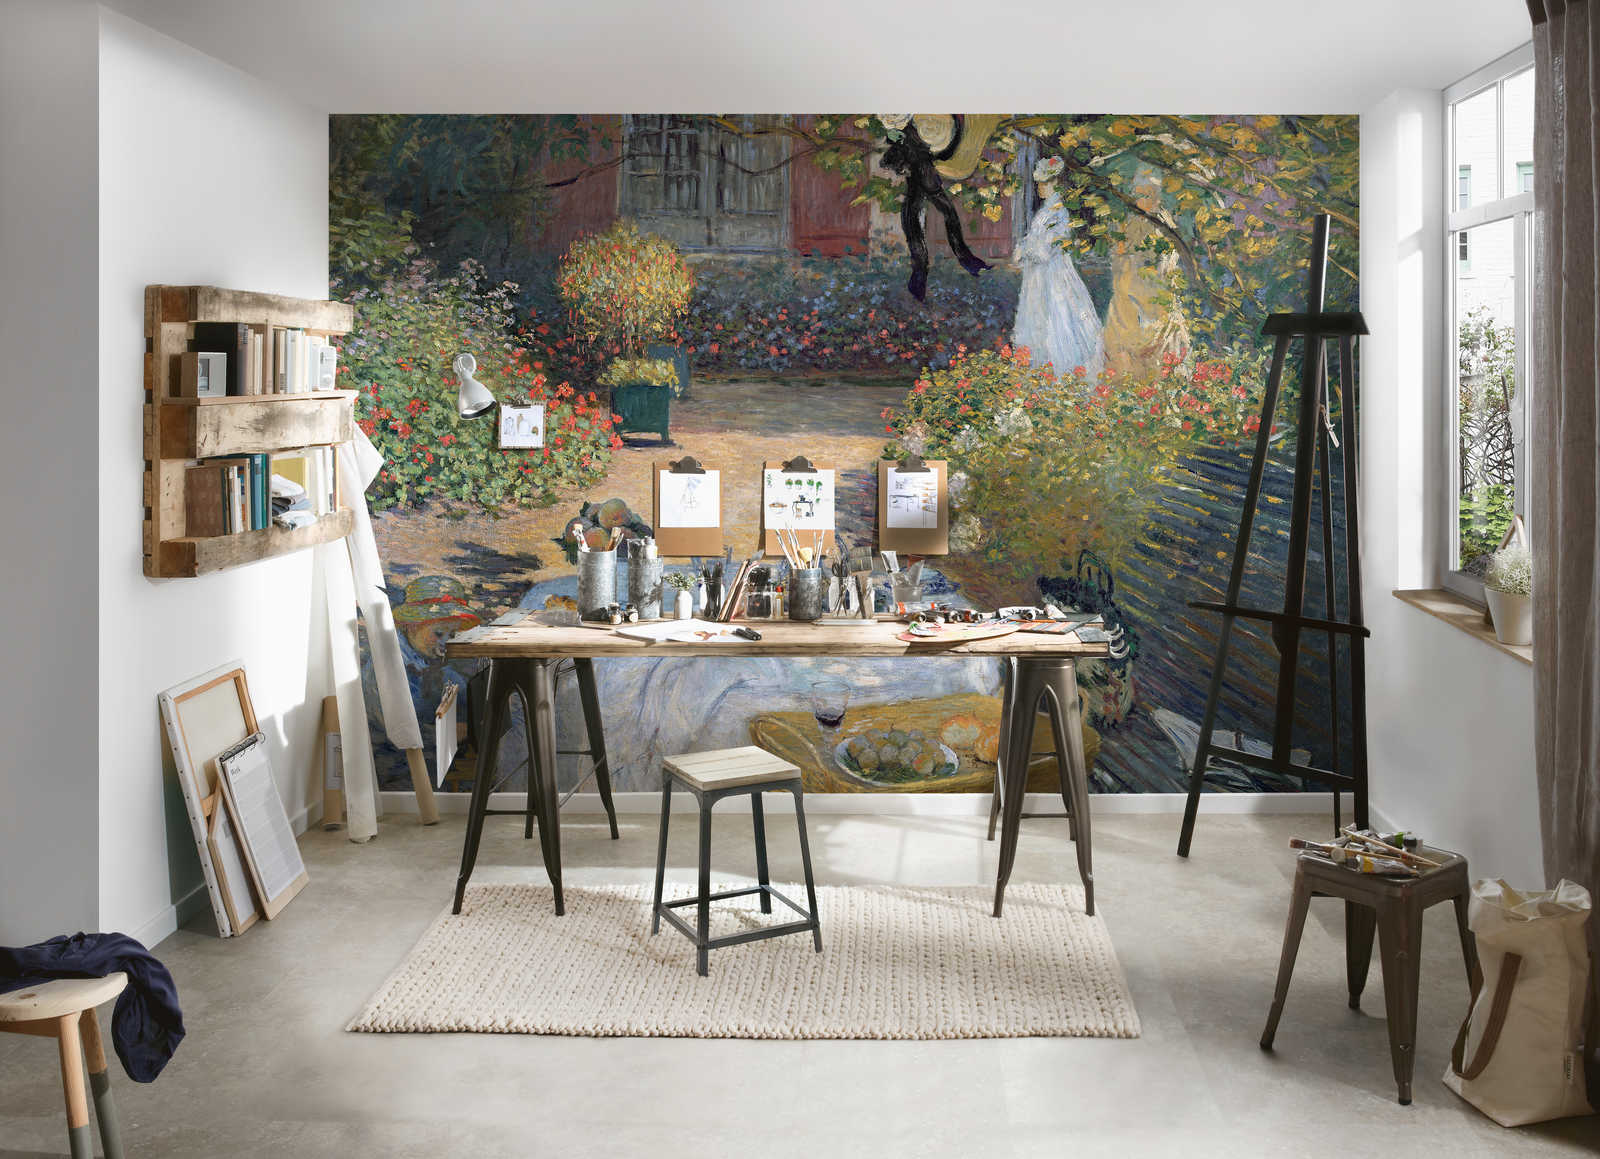             Muurschildering "Het middagmaal: de tuin van Monet in Argenteuil" van Claude Monet
        